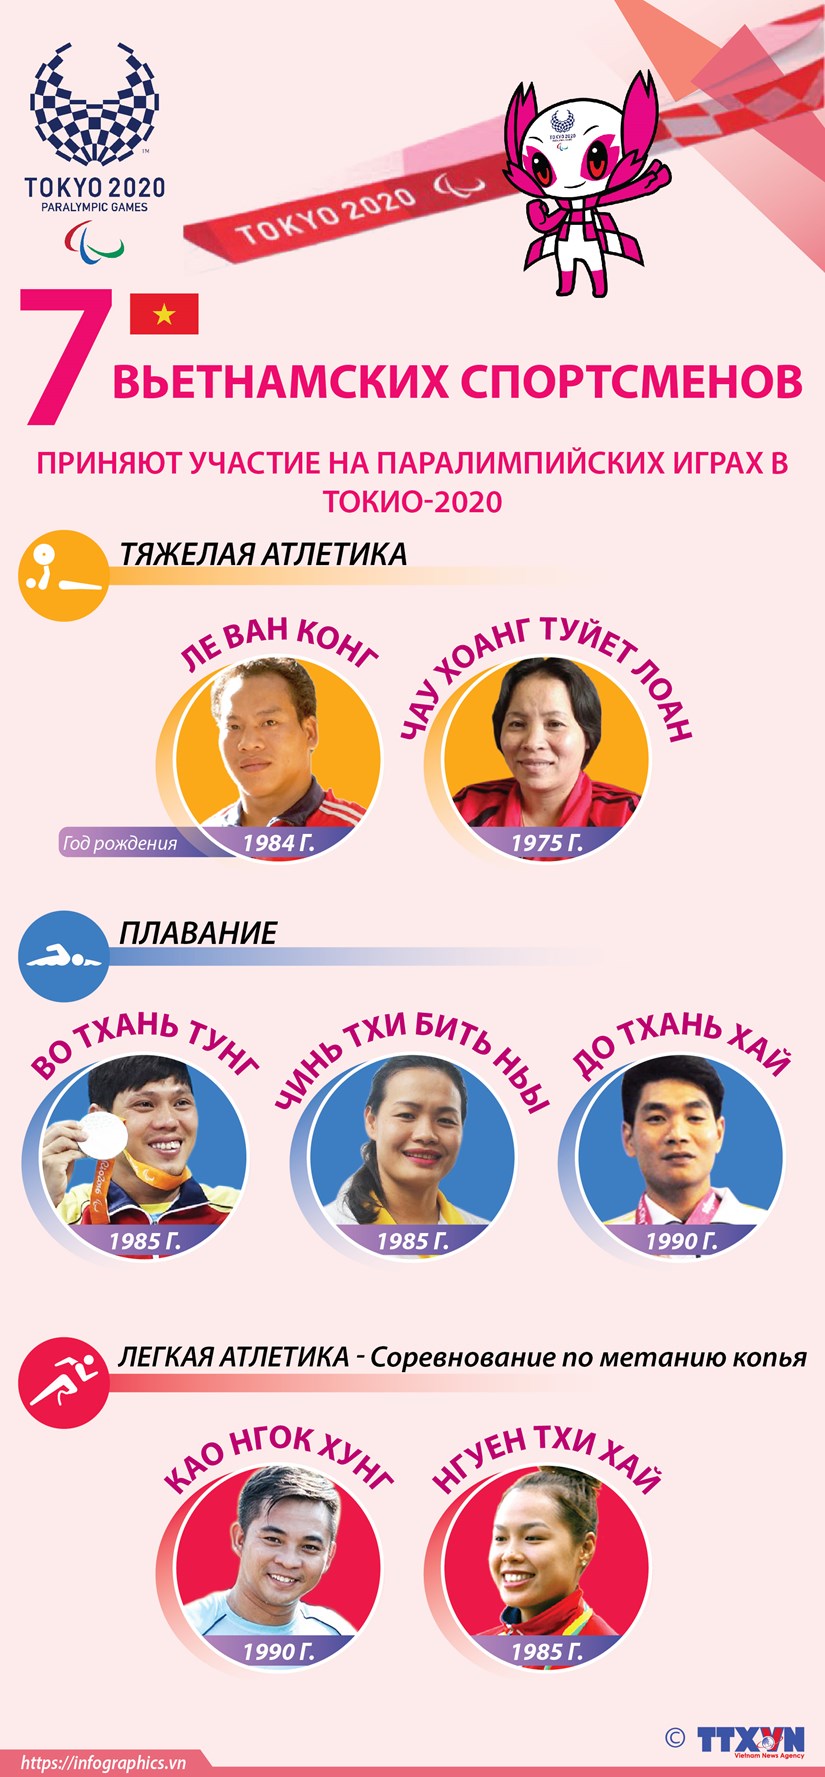 7 вьетнамских спортсменов приняют участие на Паралимпииских играх в Токио-2020 hinh anh 1